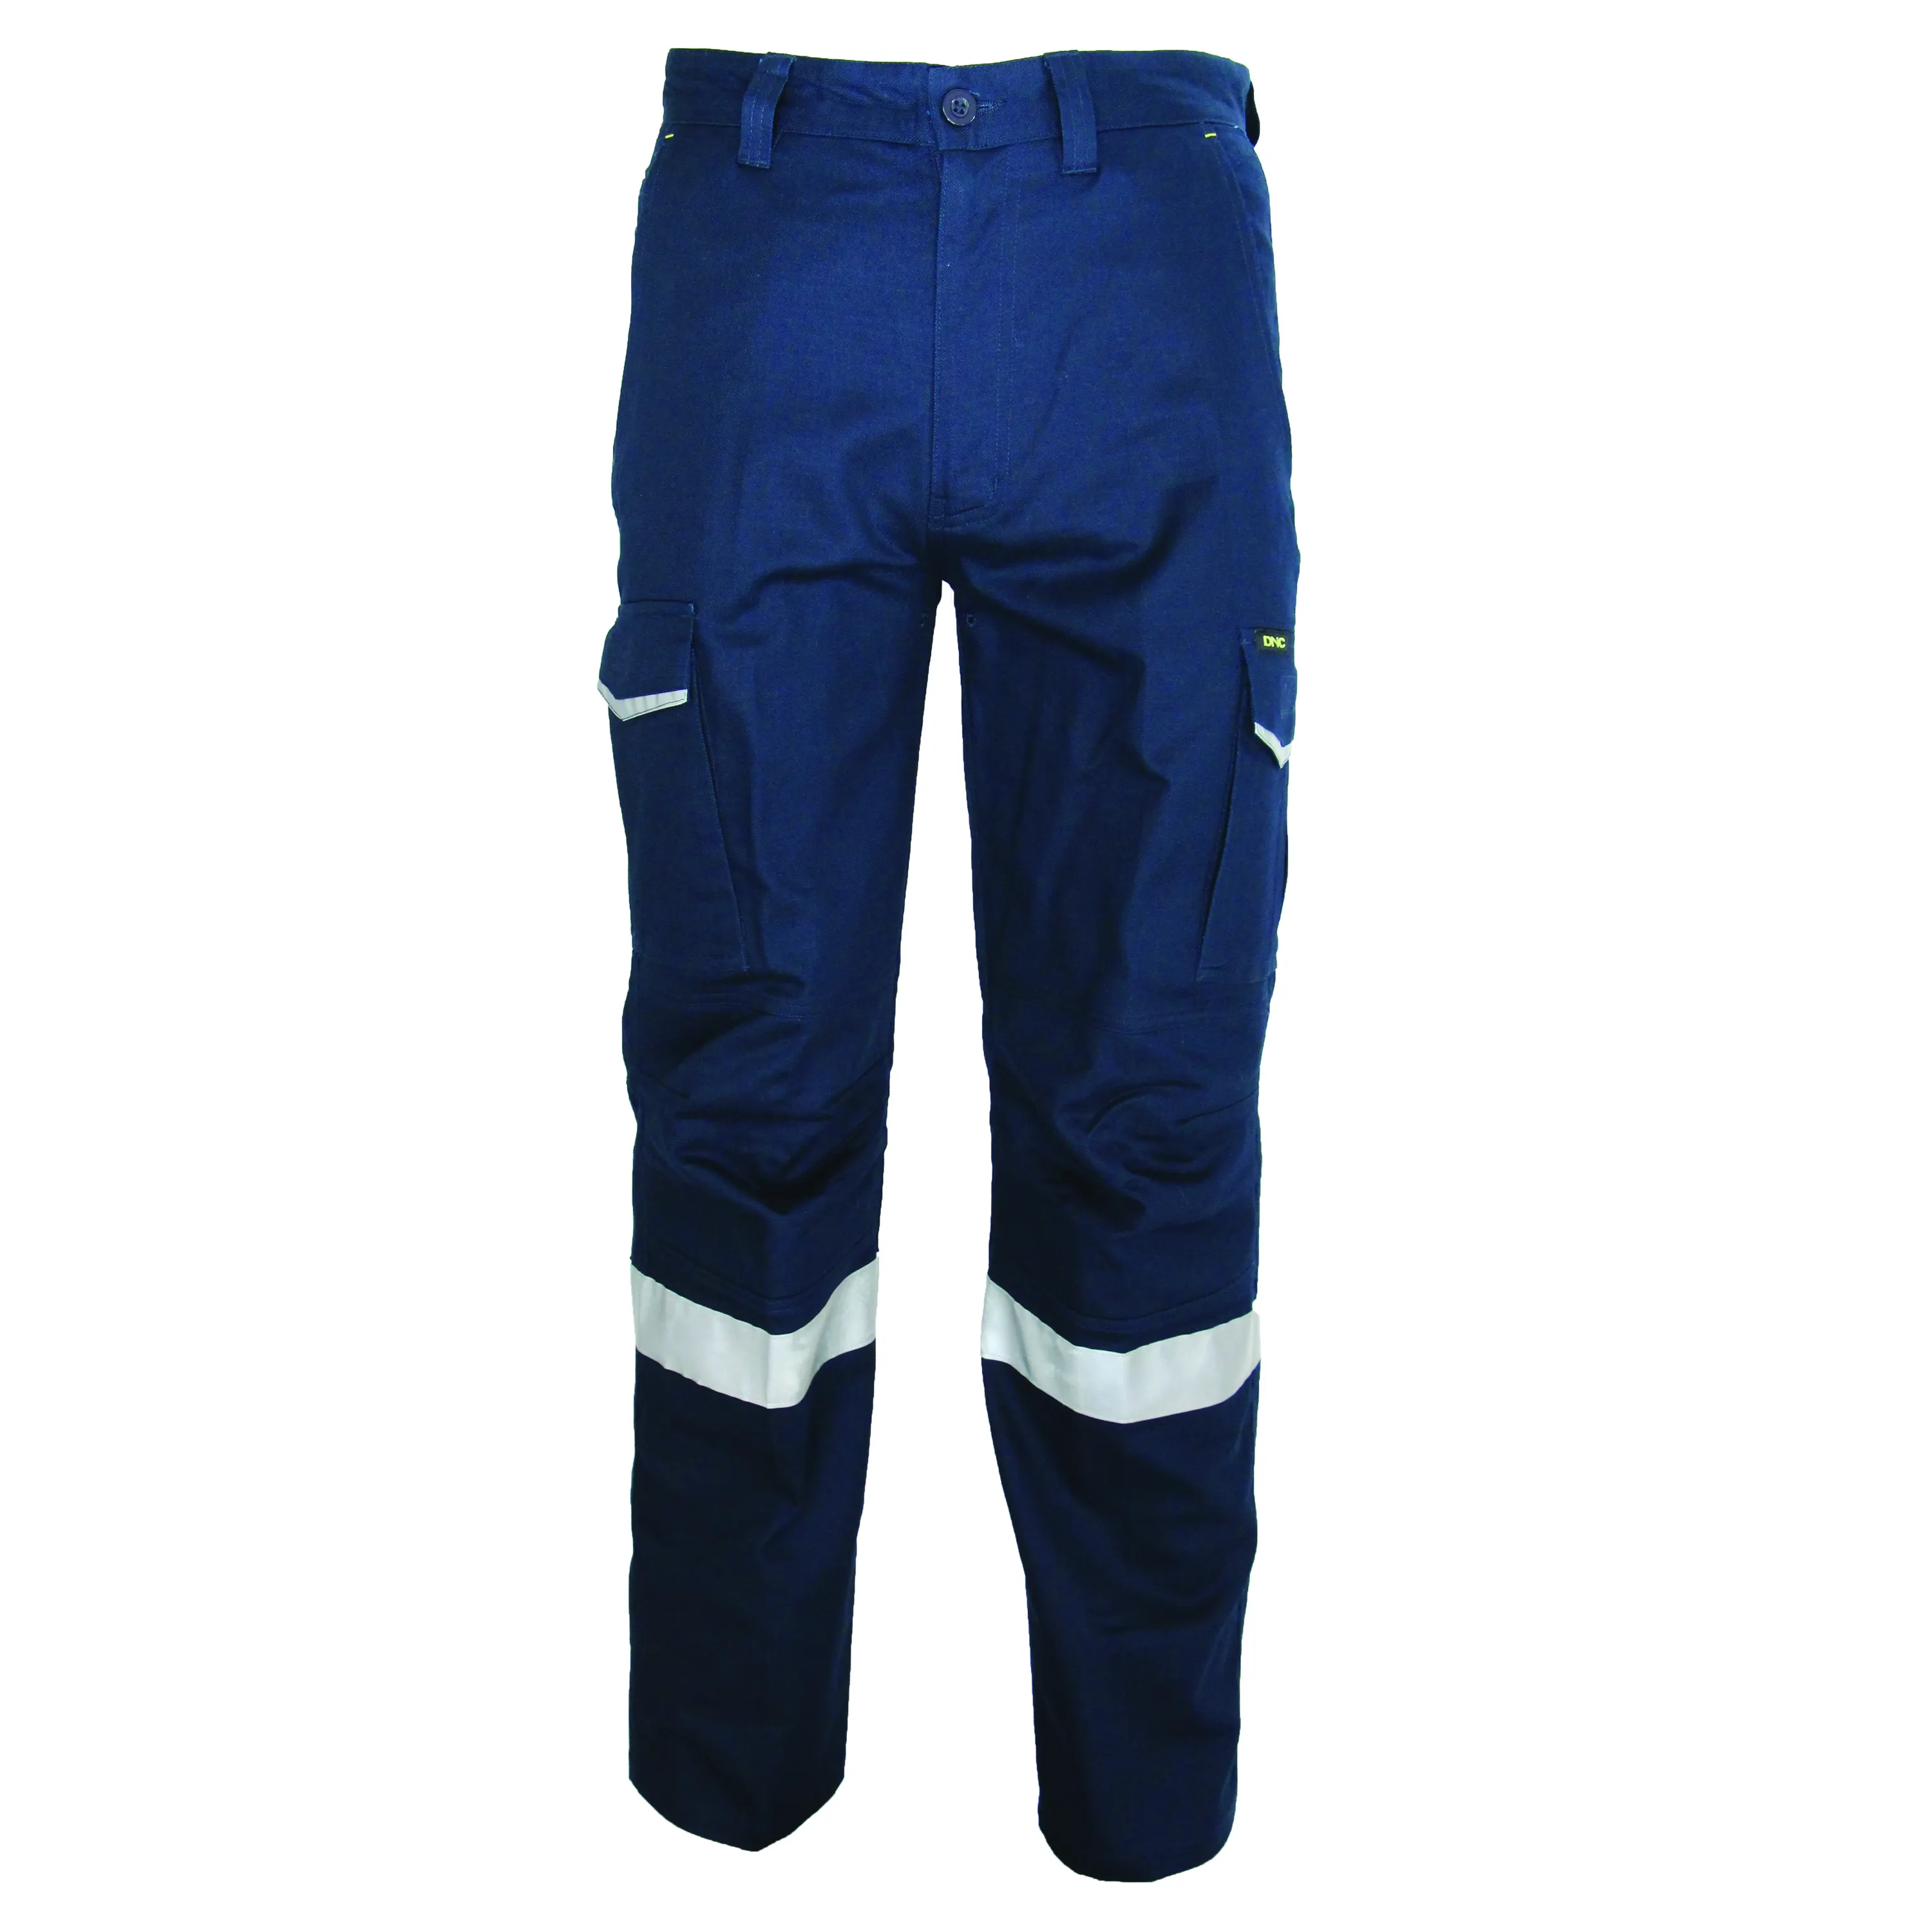 Nomex IIIA-pantalones de seguridad Industrial FR, ropa resistente al fuego